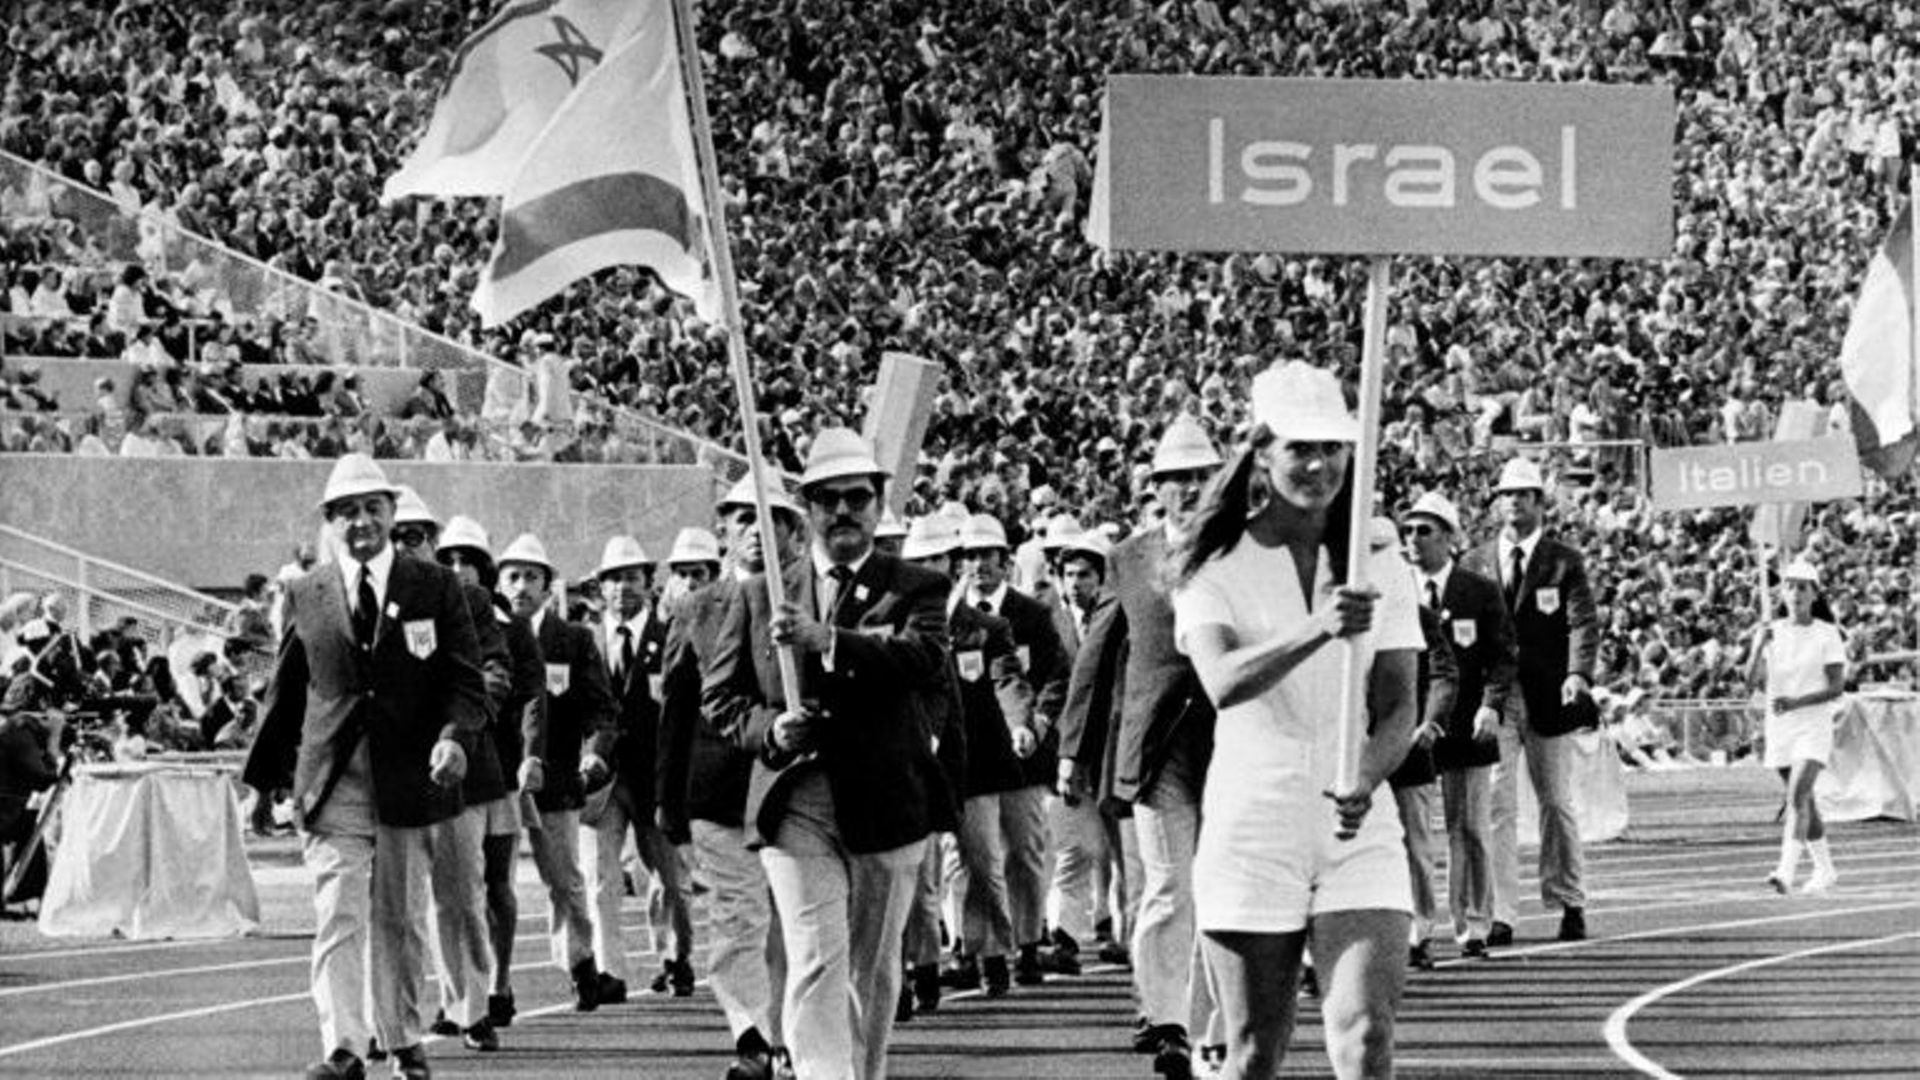 La délégation Israélienne défile lors de la cérémonie d’ouverture. Munich, 1972.